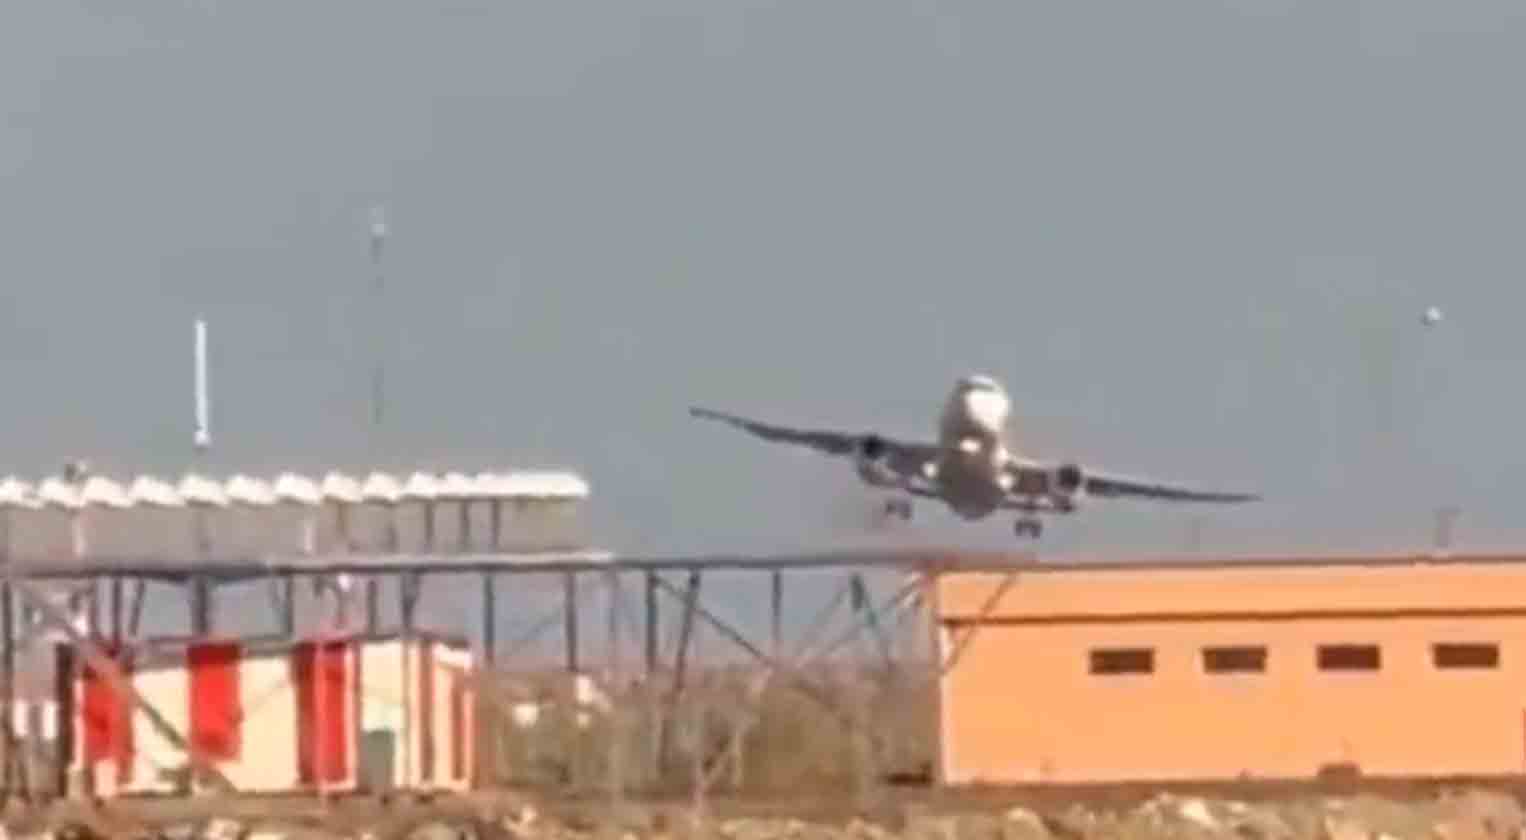 וידאו מראה את הרגע המתוח בו מטוס של חברת Turkish Airlines מנסה לנחות בשדה התעופה אורדו-גירסון. תמונה ווידאו: טוויטר @HavaForum 